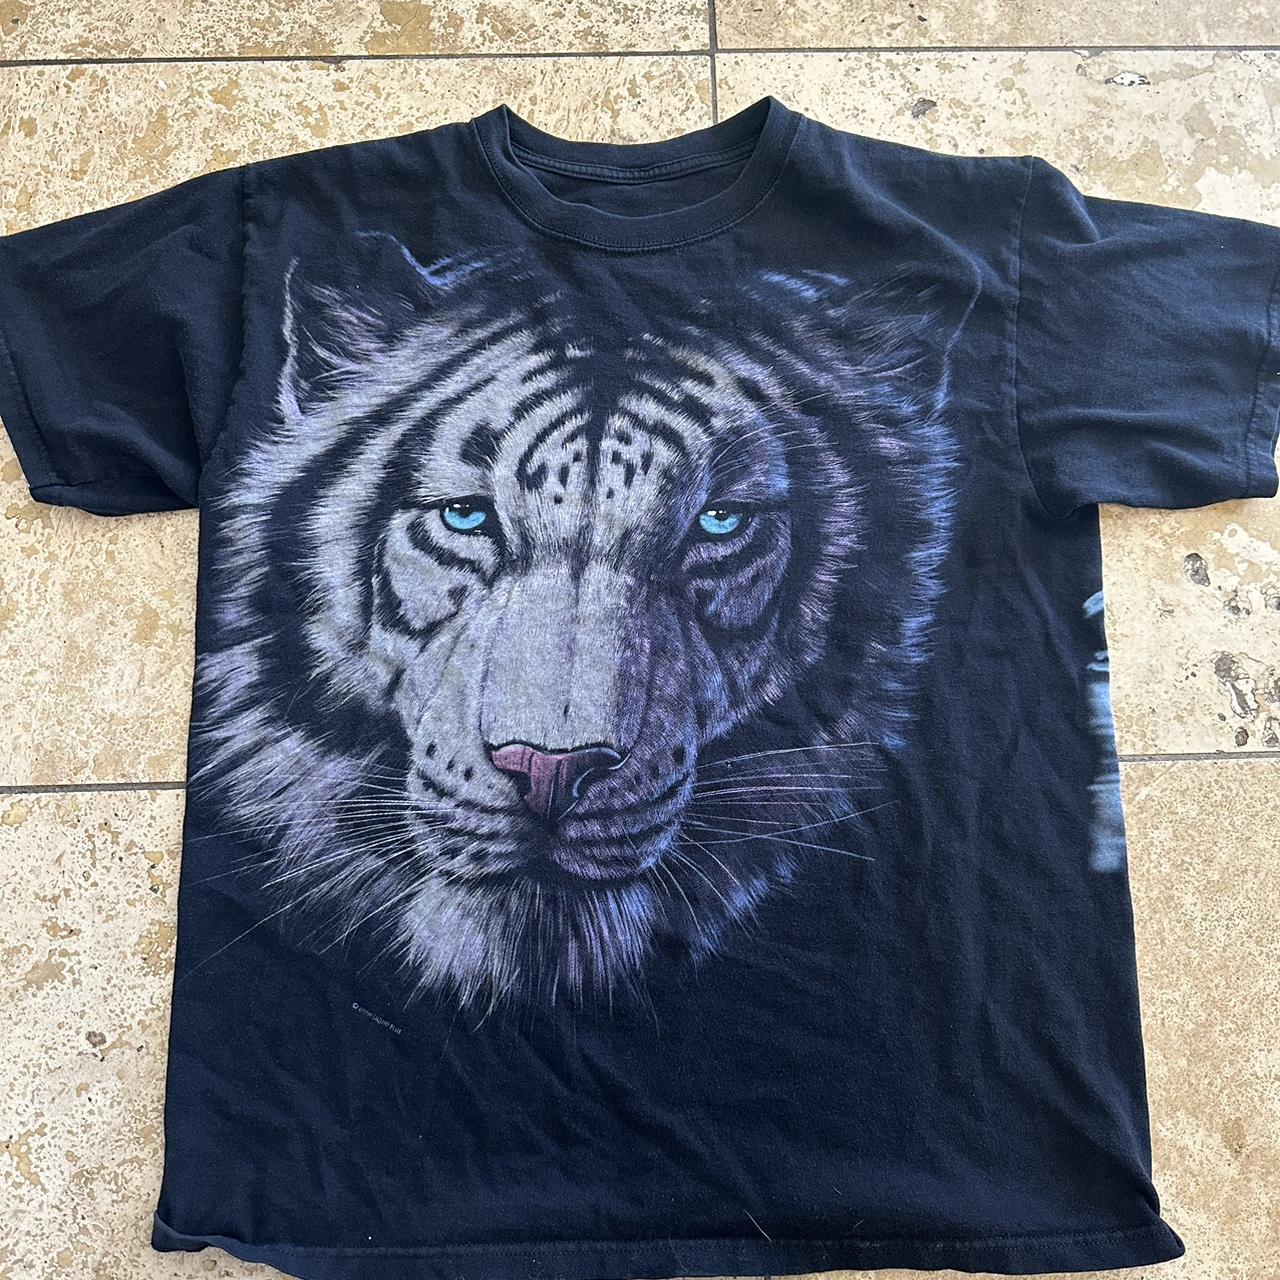 Tiger liquid blue 98 shirt